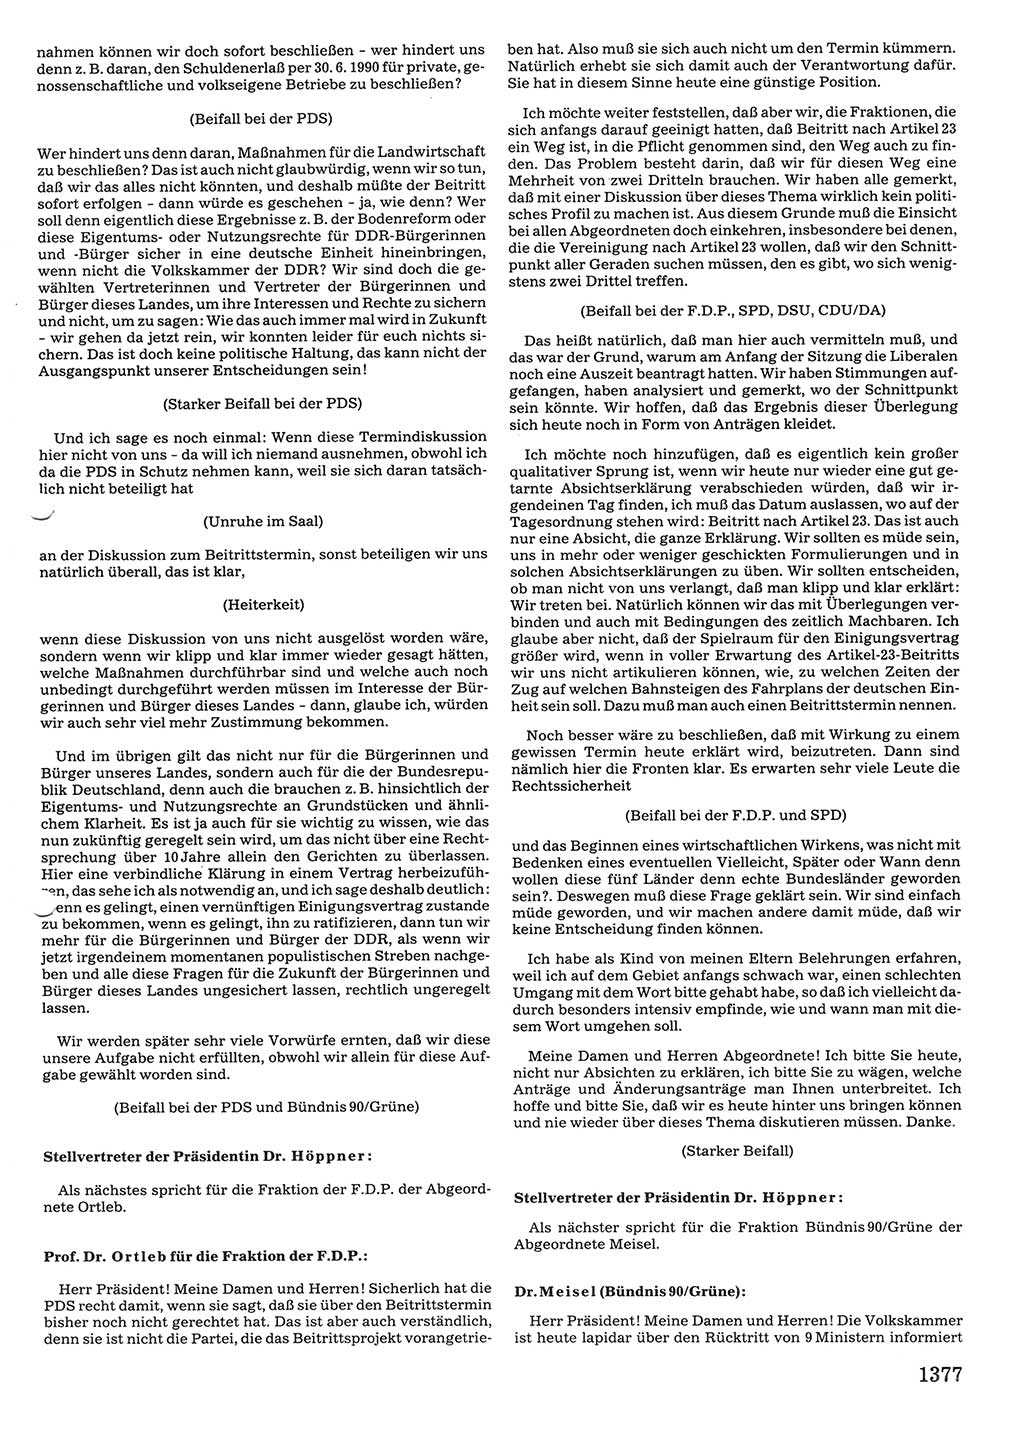 Tagungen der Volkskammer (VK) der Deutschen Demokratischen Republik (DDR), 10. Wahlperiode 1990, Seite 1377 (VK. DDR 10. WP. 1990, Prot. Tg. 1-38, 5.4.-2.10.1990, S. 1377)